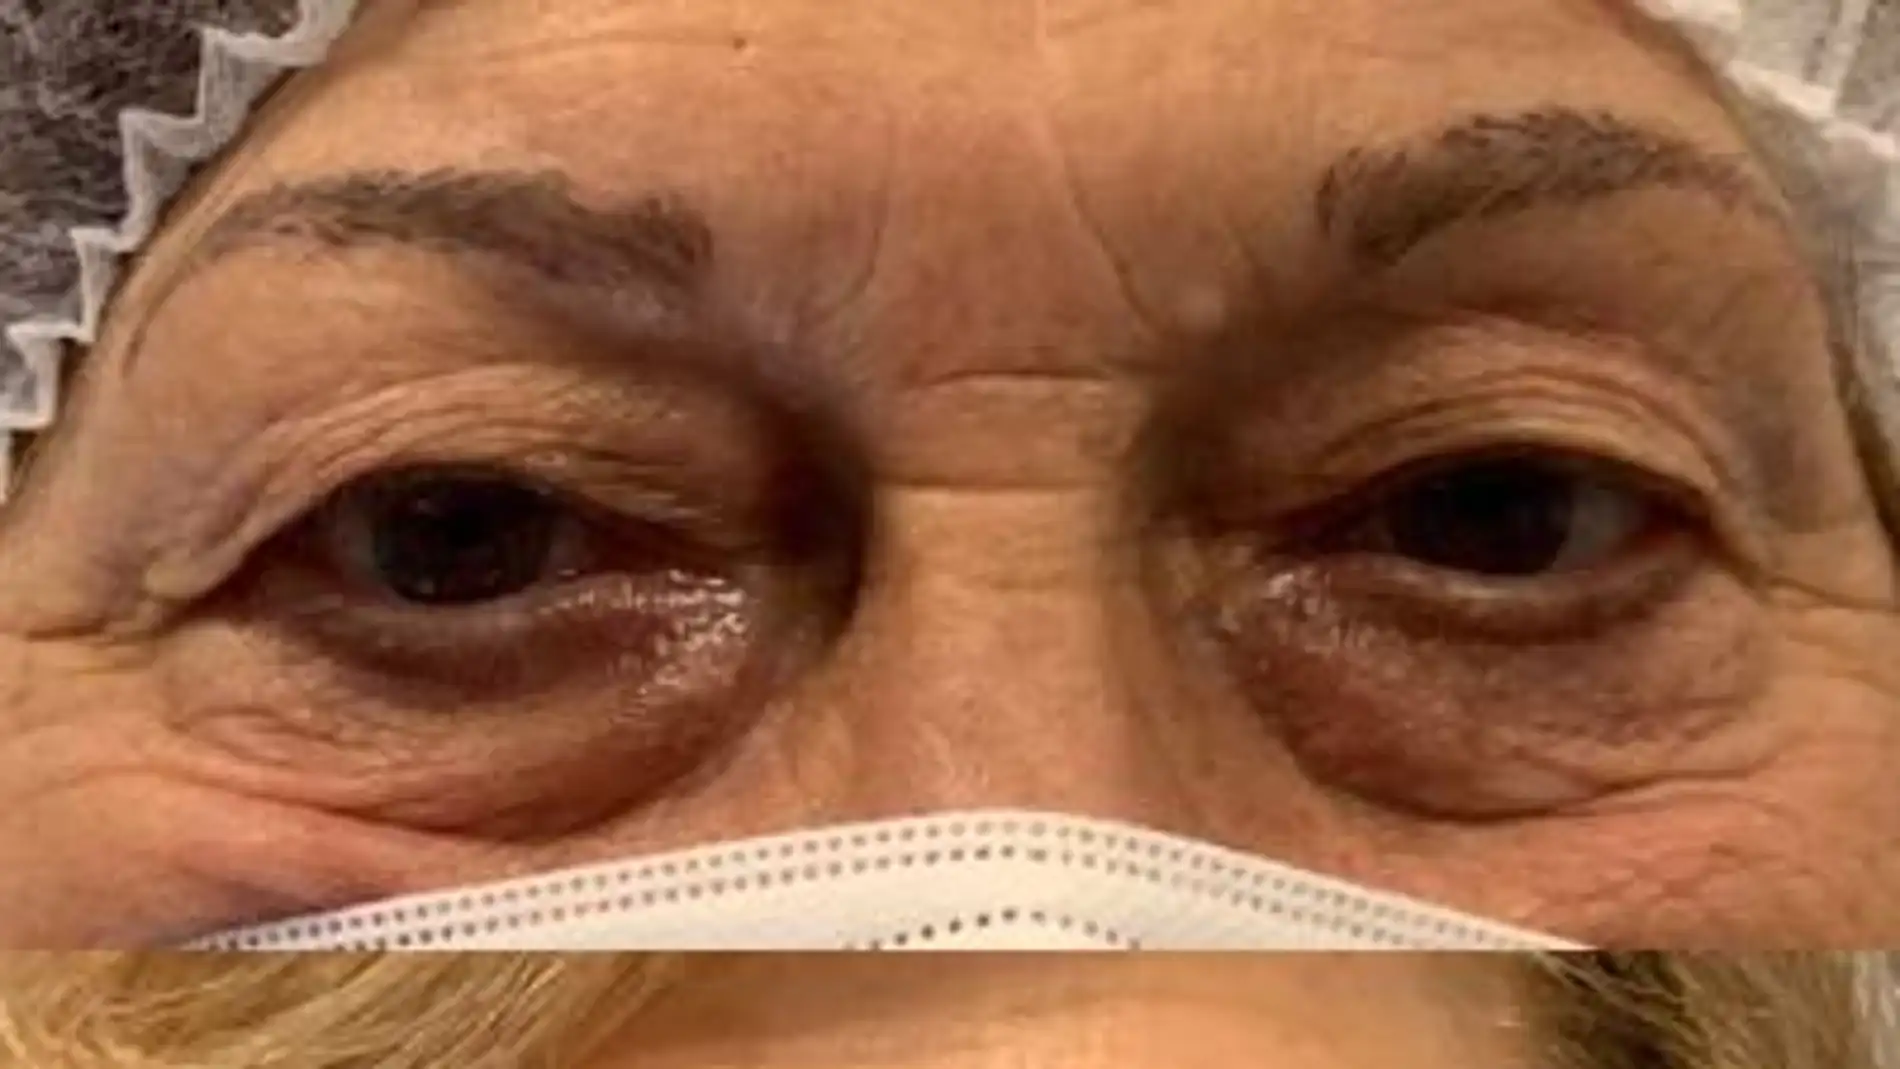 Quirónsalud Málaga incorpora un láser oftalmológico para blefaroplastia sin cirugía